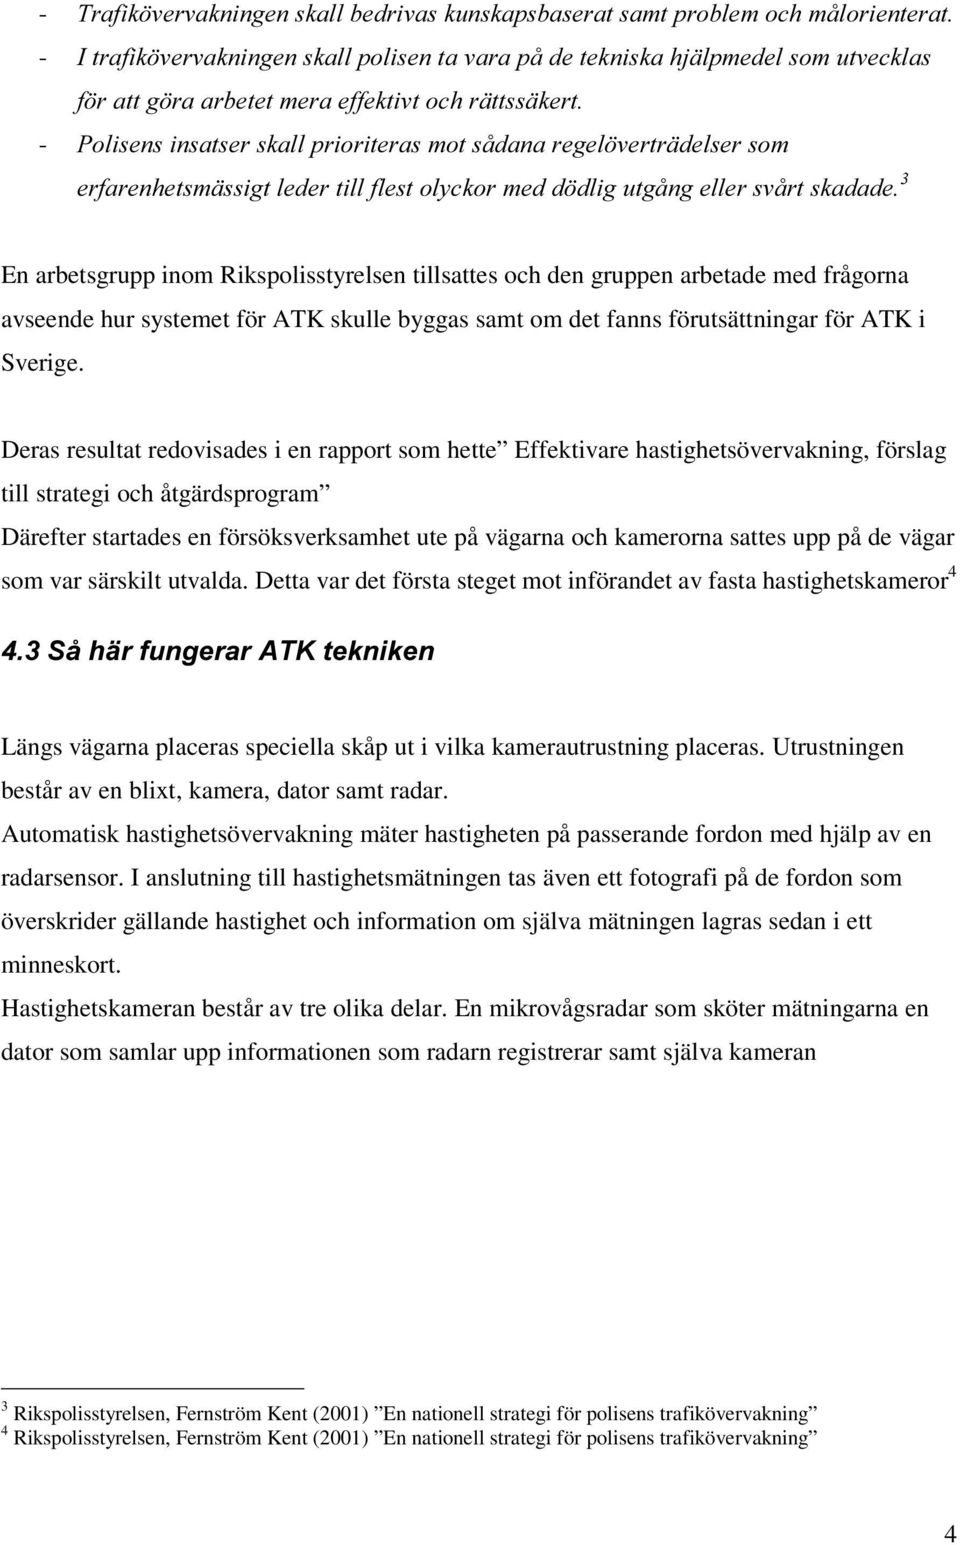 gruppen arbetade med frågorna avseende hur systemet för ATK skulle byggas samt om det fanns förutsättningar för ATK i Sverige.